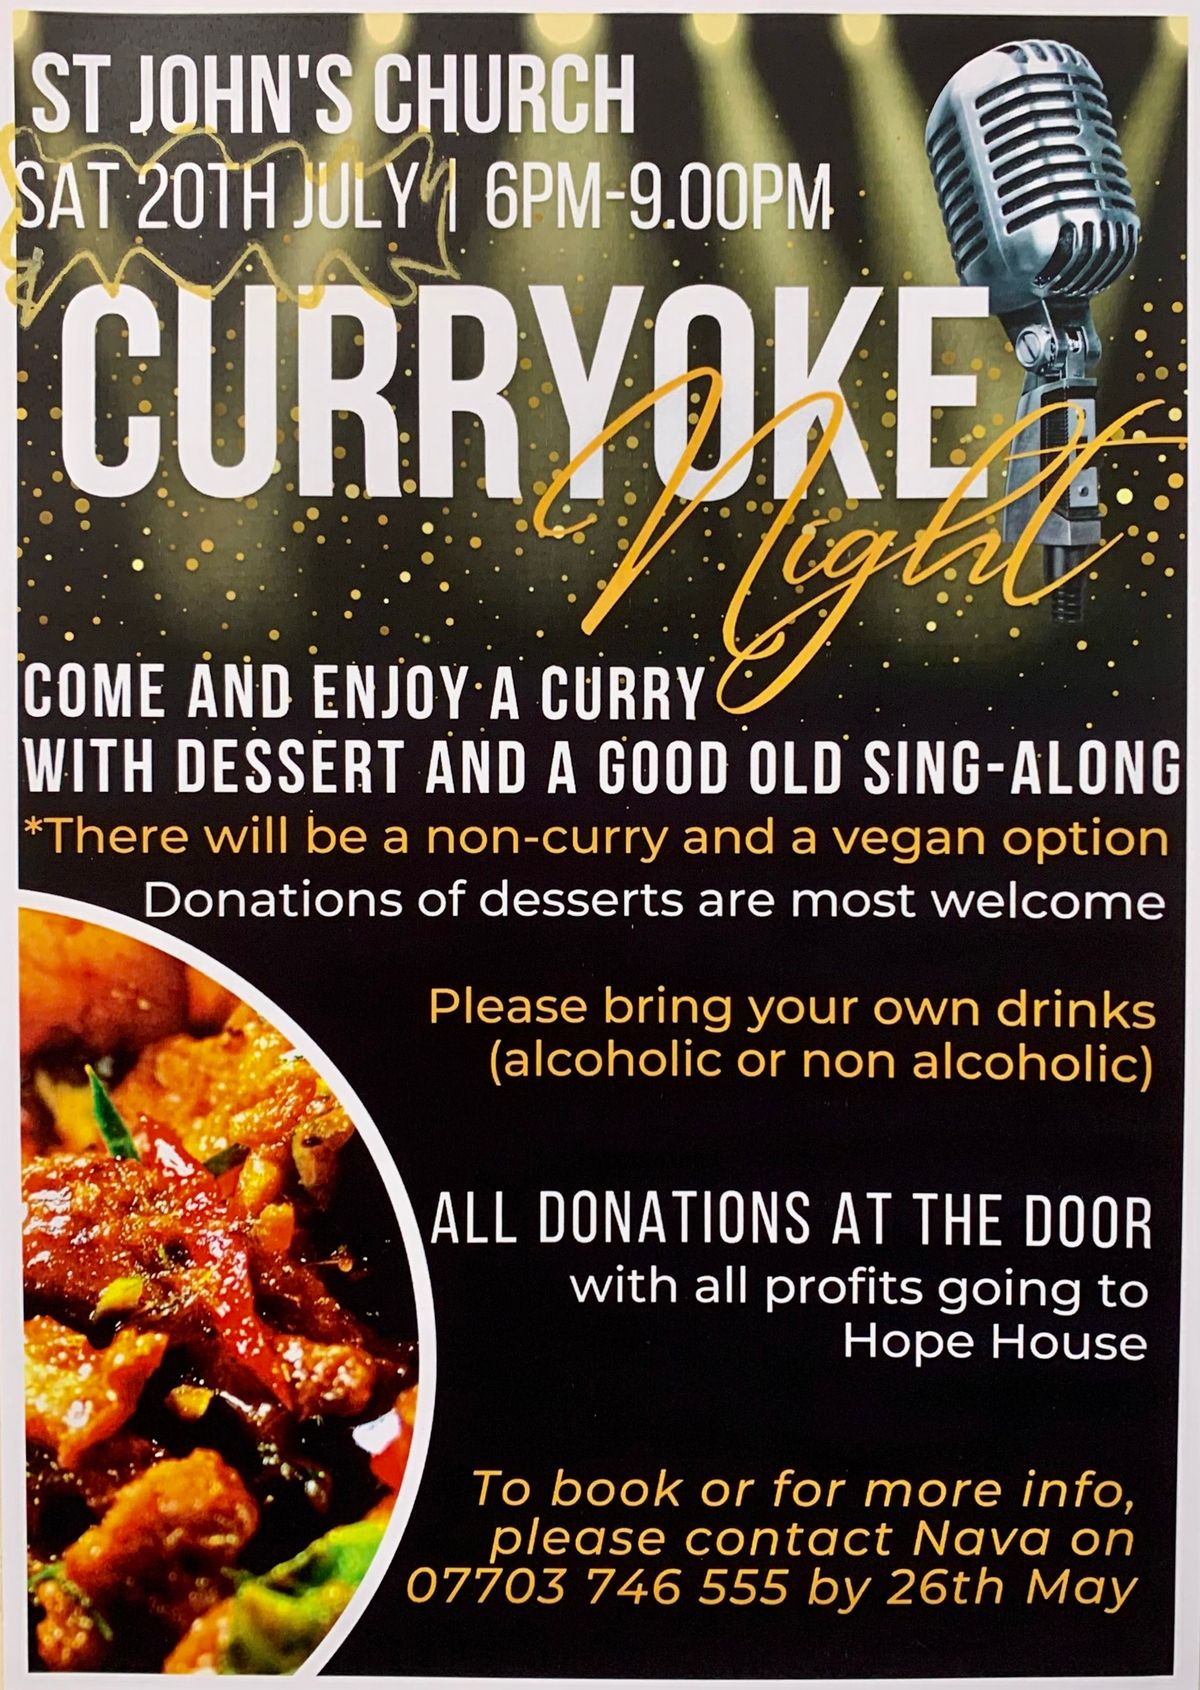 CurryOke Night